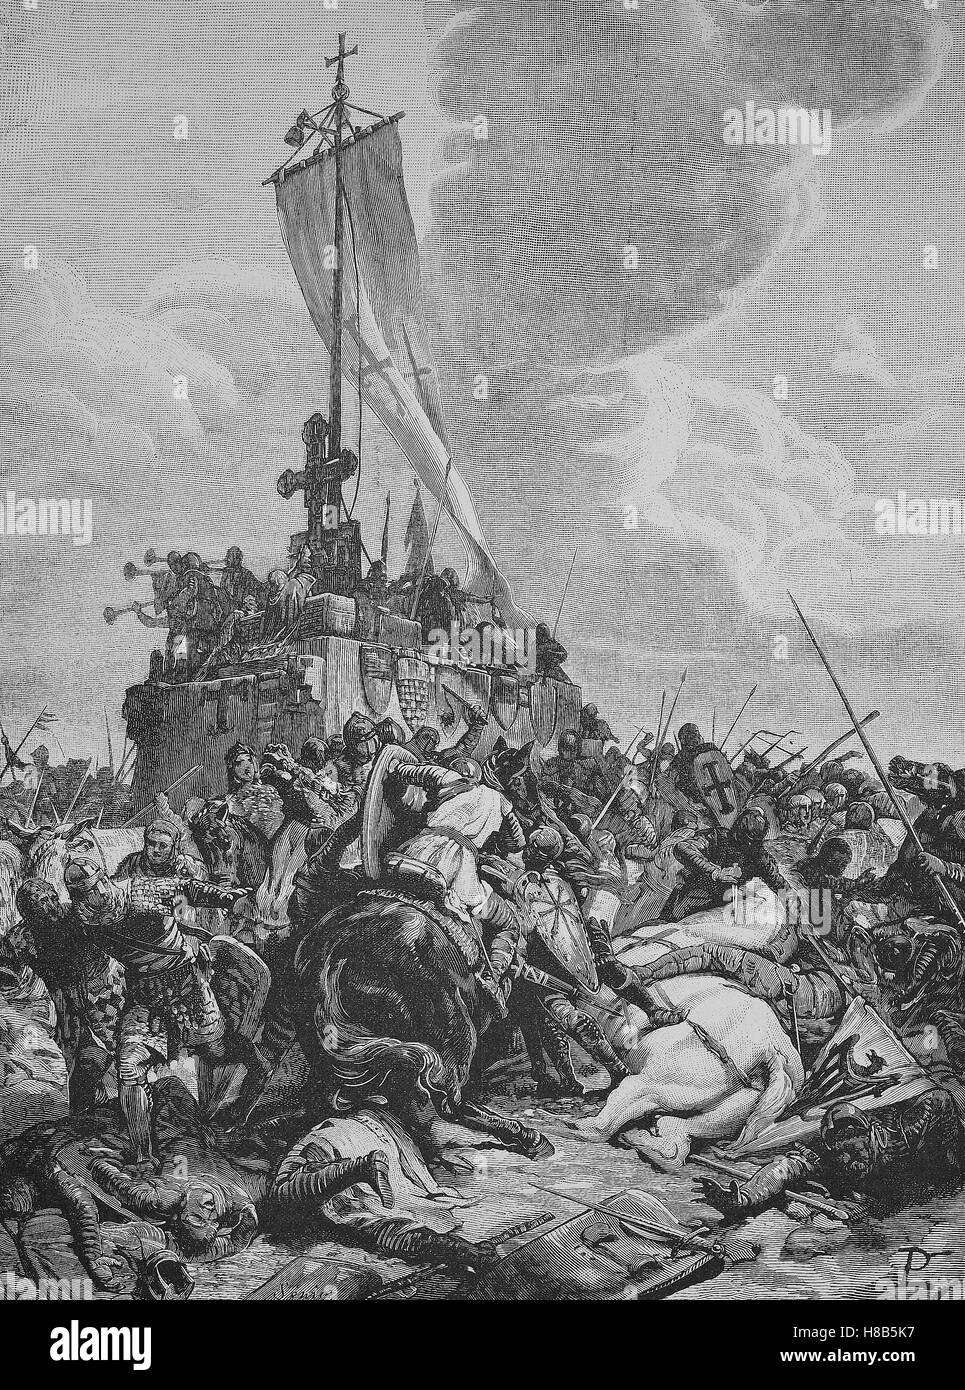 Der Schlacht bei Legnano. Die Schlacht von Legnano wurde am 29 Mai 1176 zwischen den Kräften des Heiligen Römischen Reiches, unter der Leitung von Kaiser Frederick Barbarossa und der Lega gekämpft. Die kaiserliche Armee erlitt eine schwere Niederlage, Holzschnitt aus dem Jahre 1892 Stockfoto